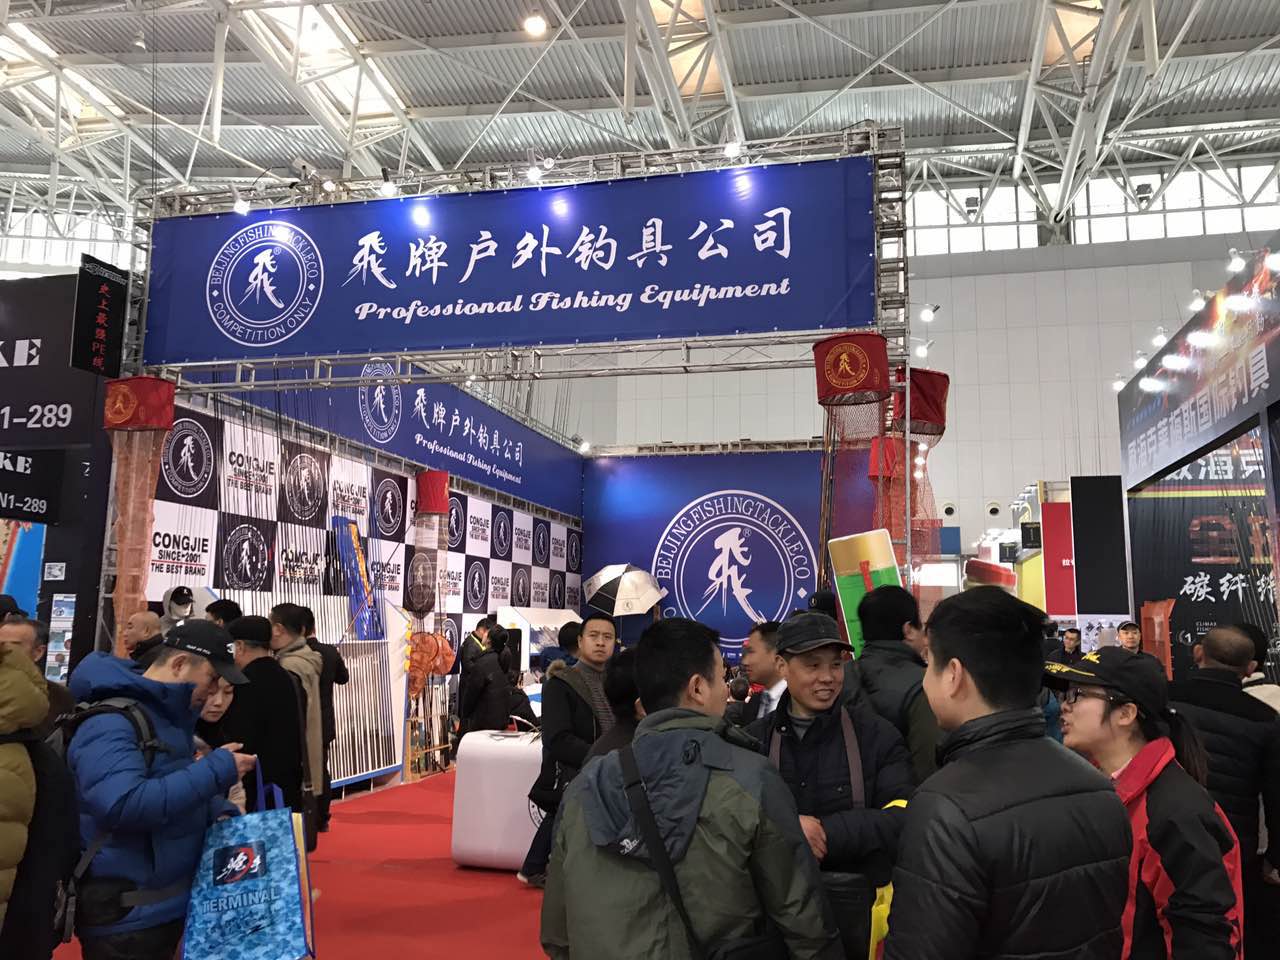 产业博览会(原碧海渔具展)于2月16日在天津梅江国际会展中心盛大开幕